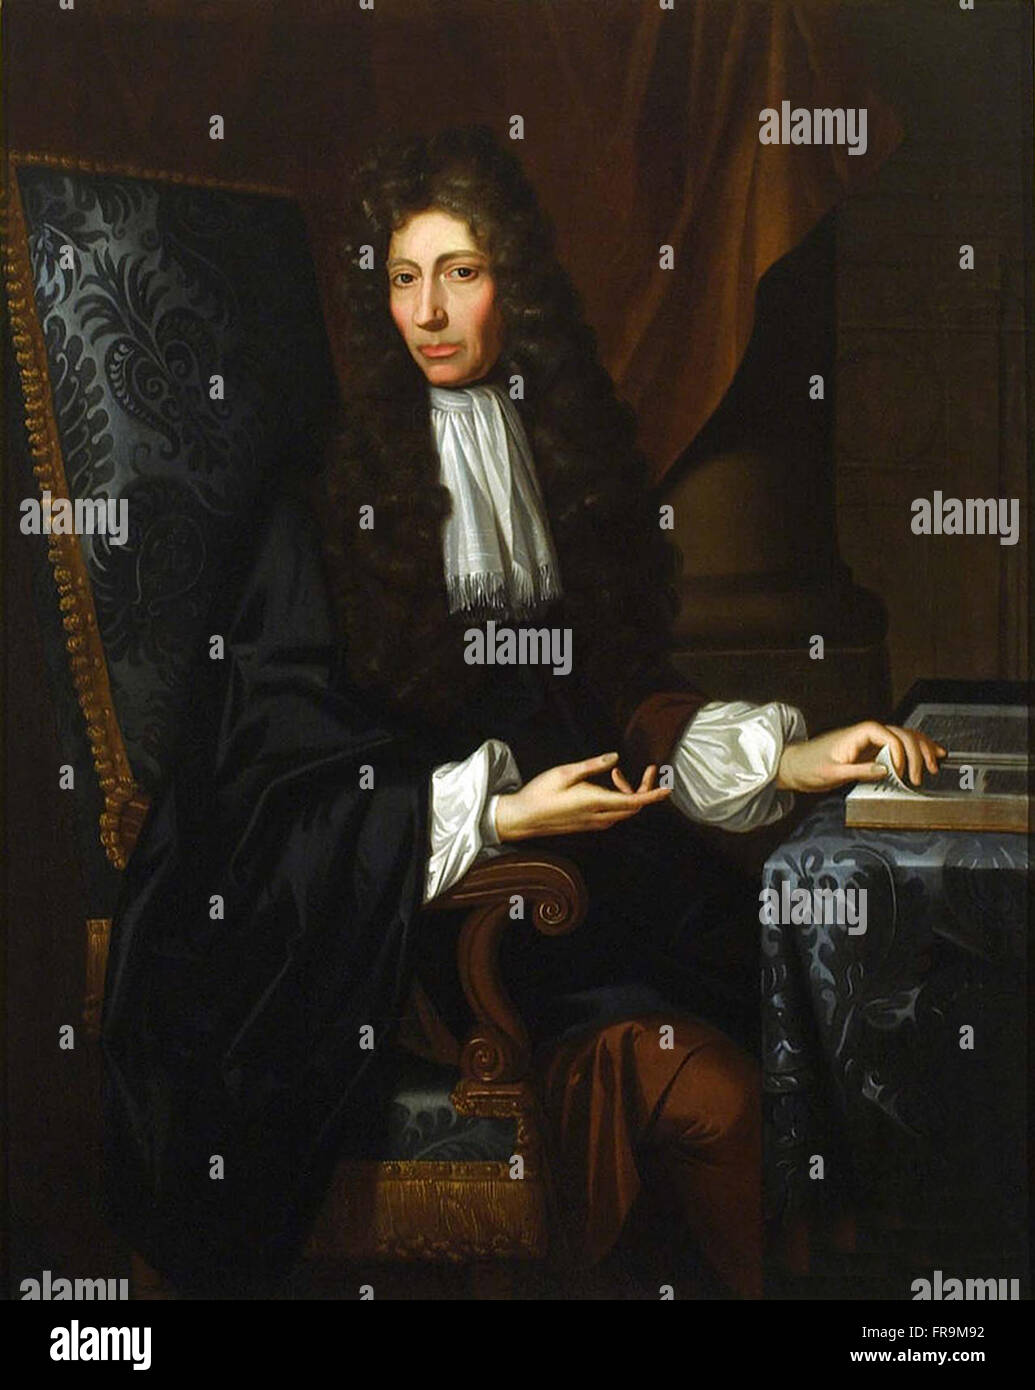 Ein 1689-Öl auf Leinwand Portrait von Robert Boyle.  Robert William Boyle (25. Januar 1627 – 31. Dezember 1691) war ein Anglo-Irischer Naturphilosoph, Chemiker, Physiker und Erfinder in Irland geboren. Boyle gilt heute weitgehend als der erste moderne Chemiker, und daher einer der Begründer der modernen Chemie, und einer der Pioniere der modernen experimentellen wissenschaftlichen Methode. Stockfoto